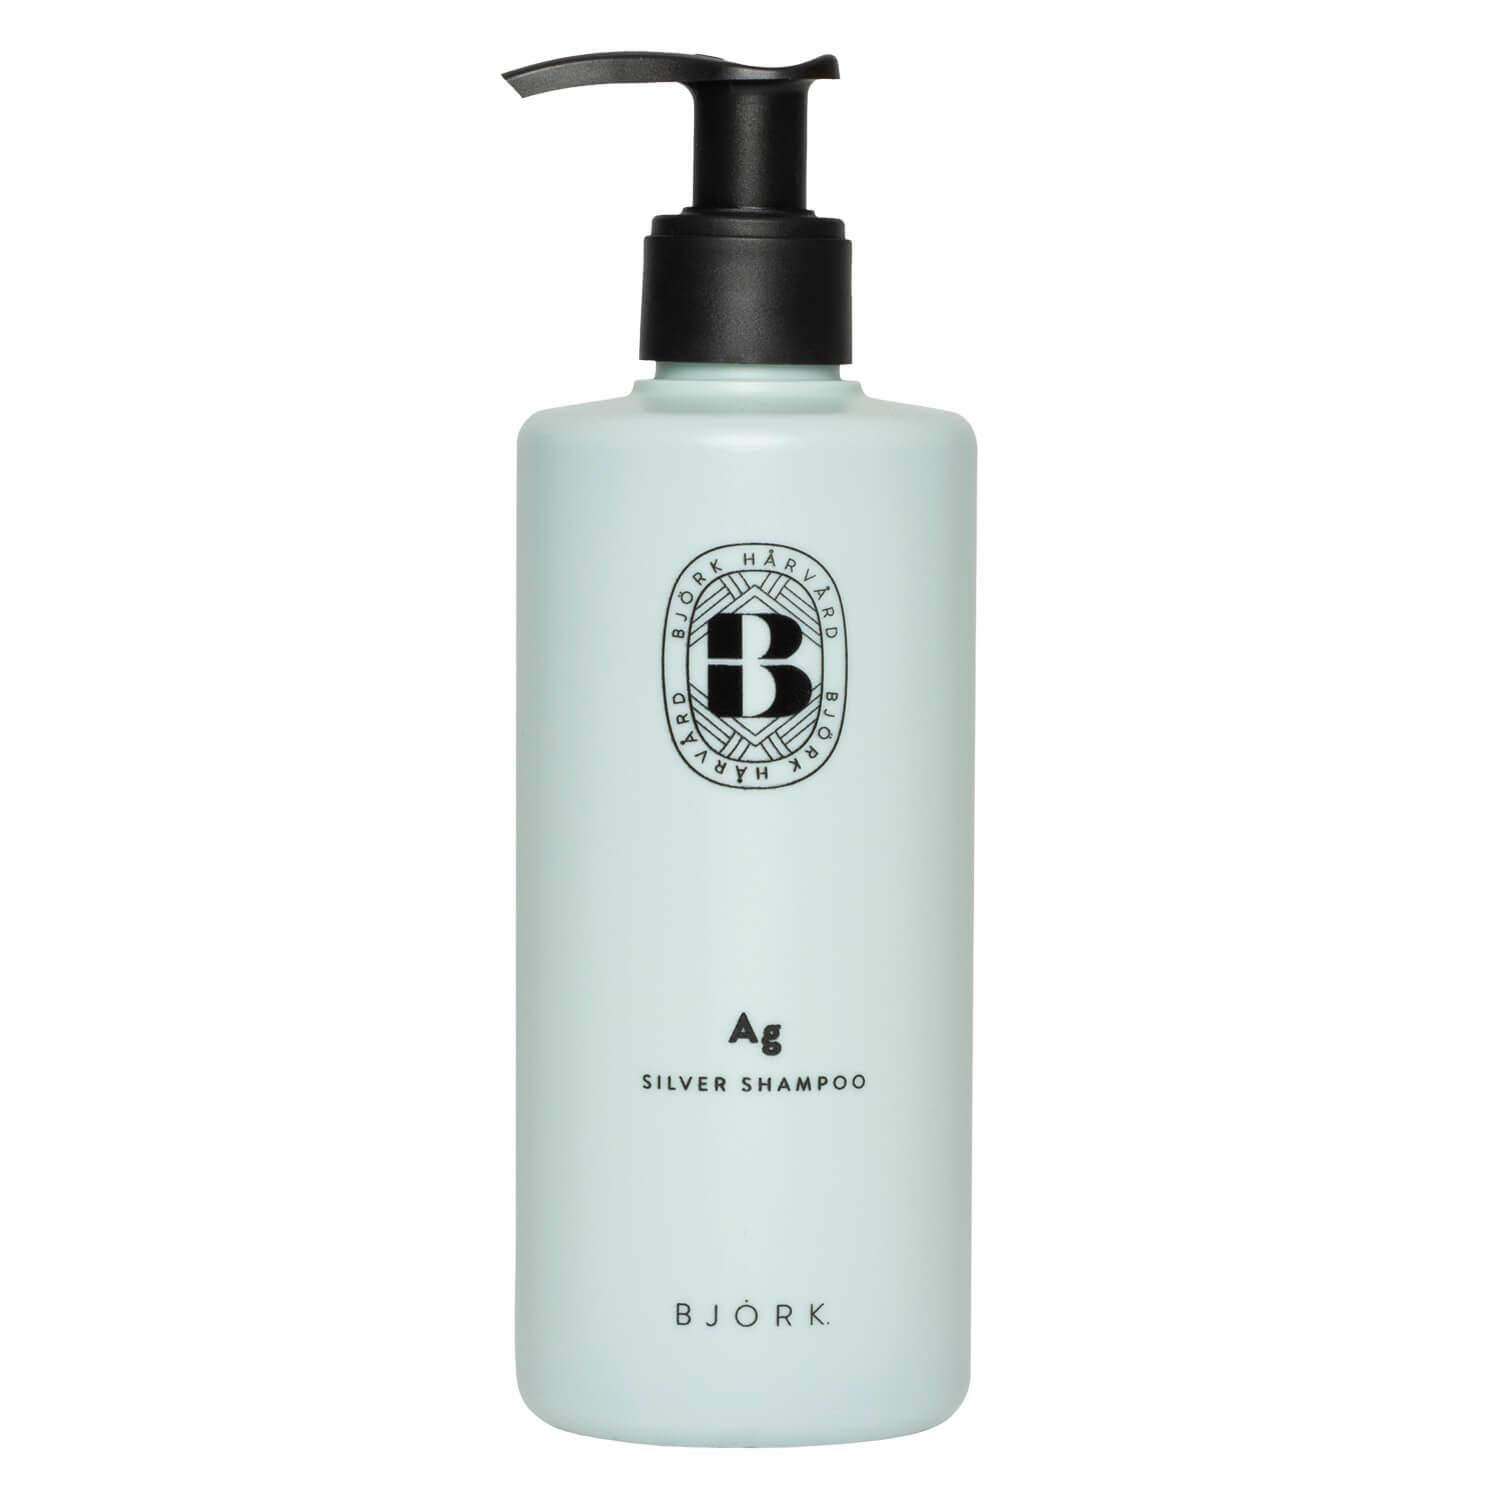 BJÖRK - AG Silver Shampoo